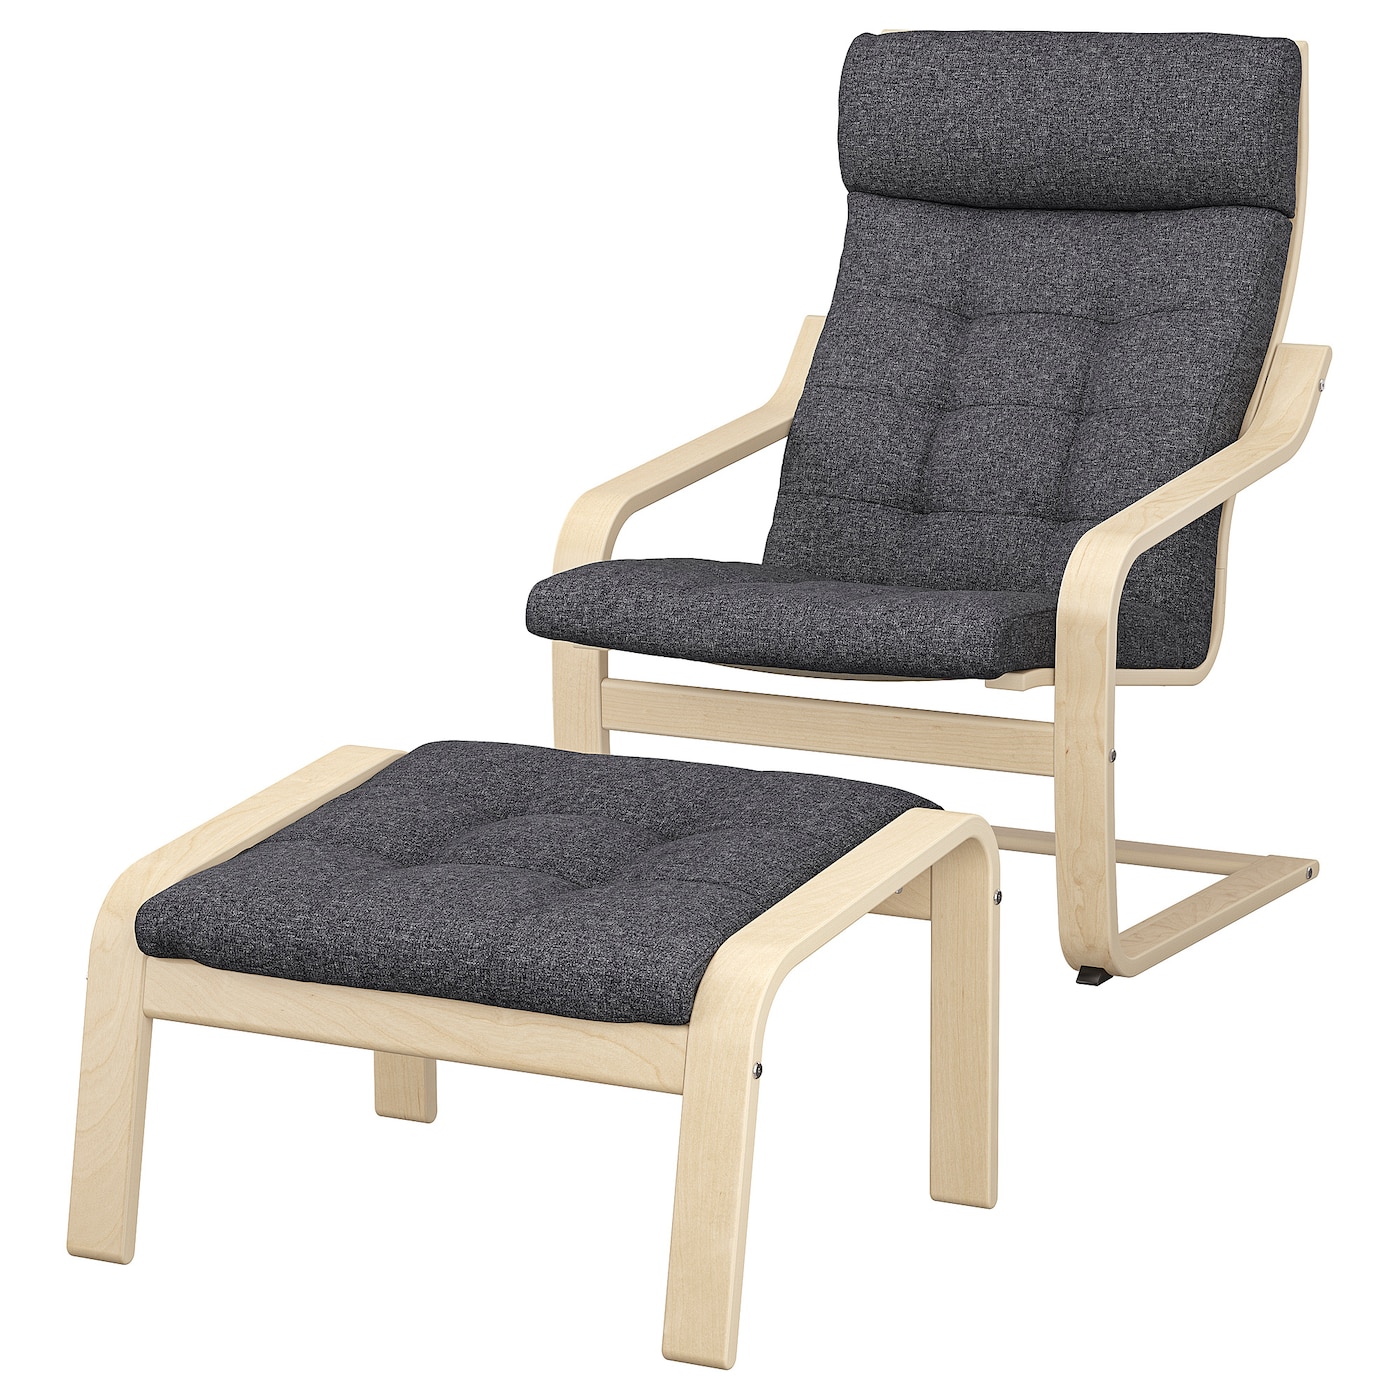 ПОЭНГ Кресло и подставка для ног, березовый шпон/Гуннаред темно-серый POÄNG IKEA